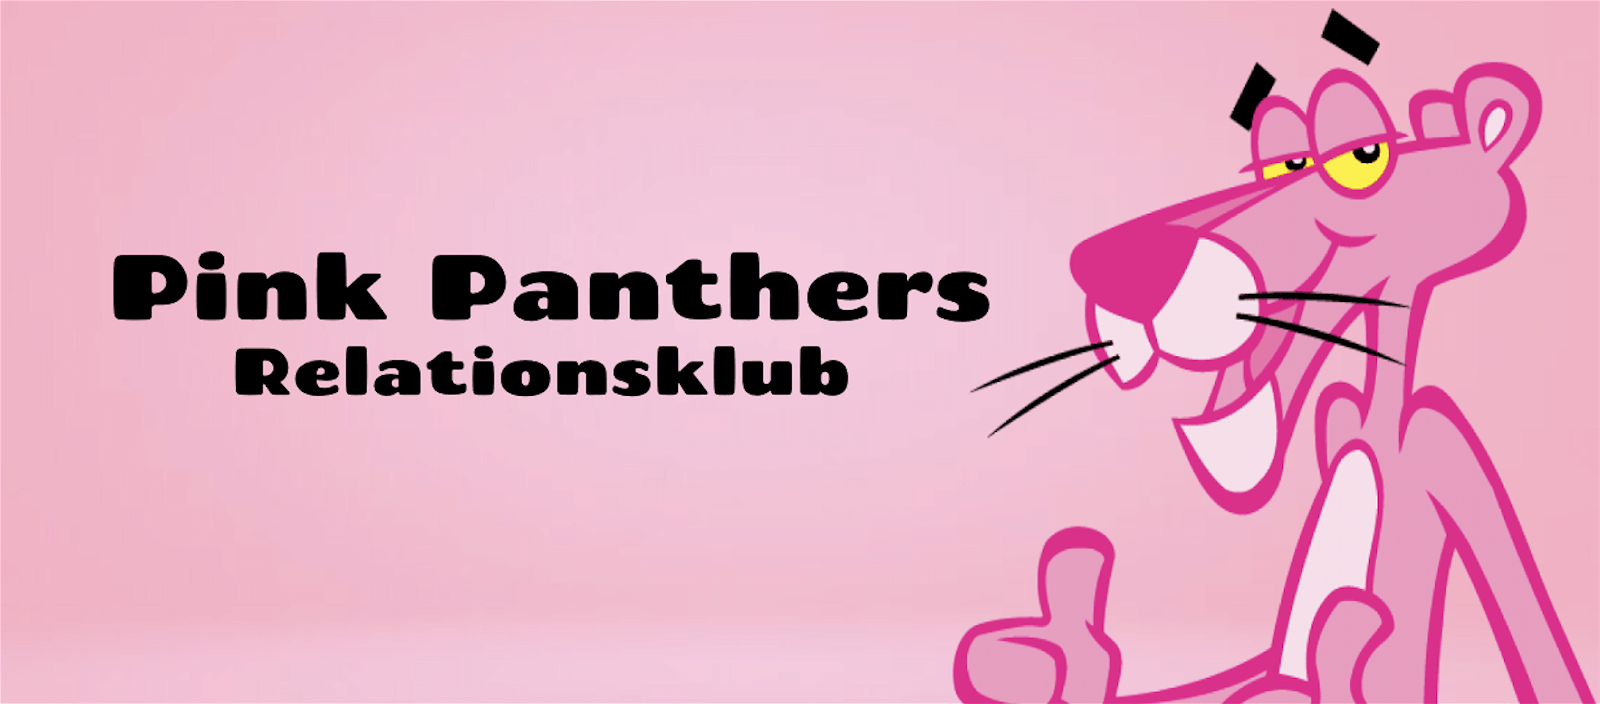 Et indblik i Pink Panthers Relationsklub